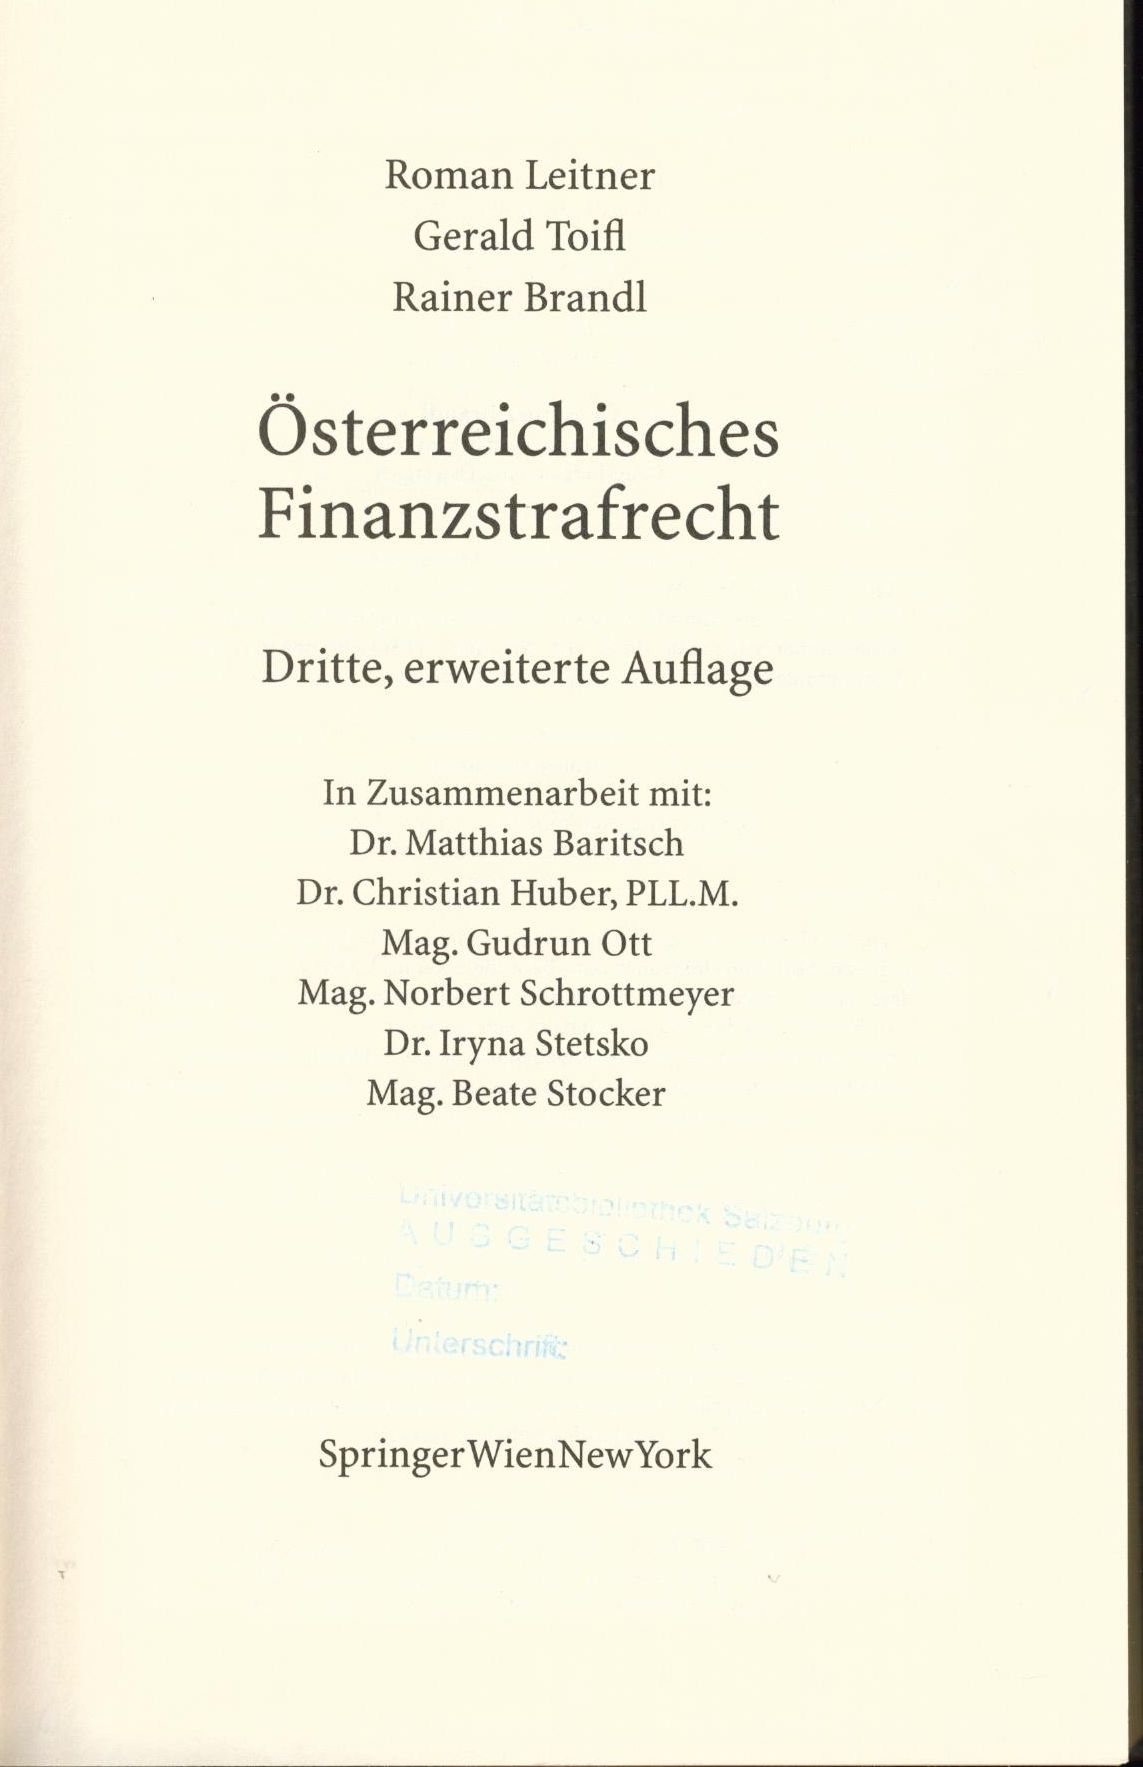 Österreichisches Finanzstrafrecht - Leitner, Roman, Gerald Toifl und Rainer Brandl